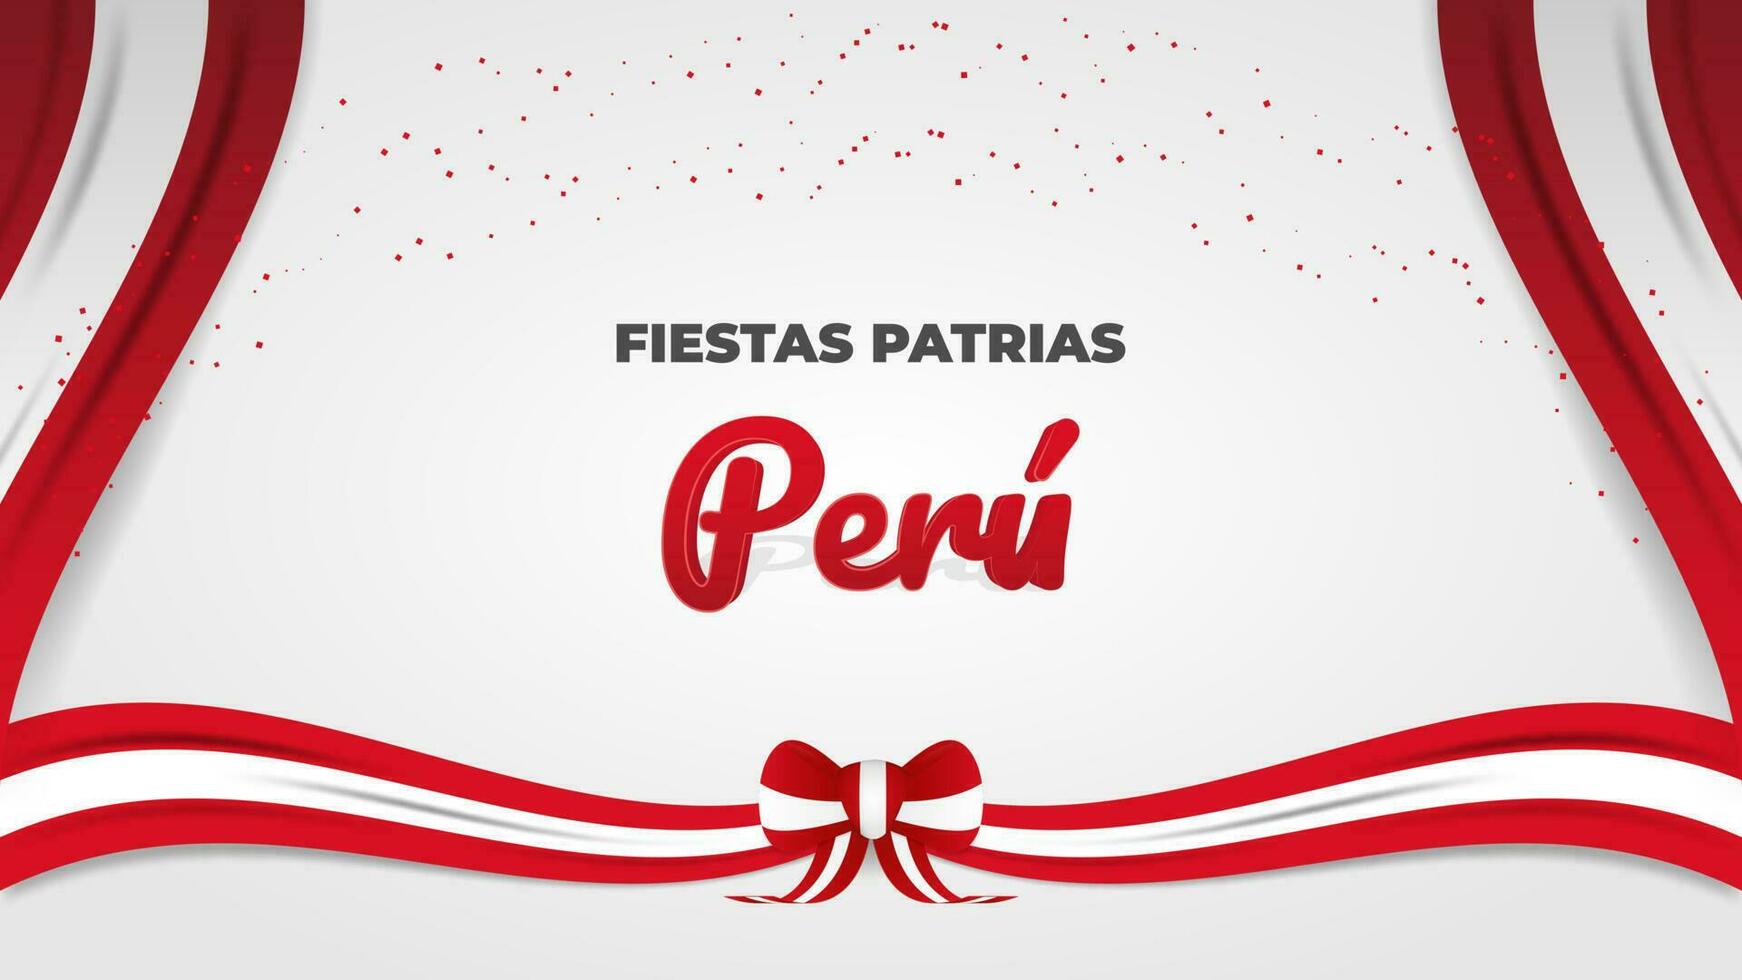 dekorativ peruanisch National Ferien Feier Gruß mit Konfetti, Band und Spanisch Phrase Text Feste patrias Peru vektor